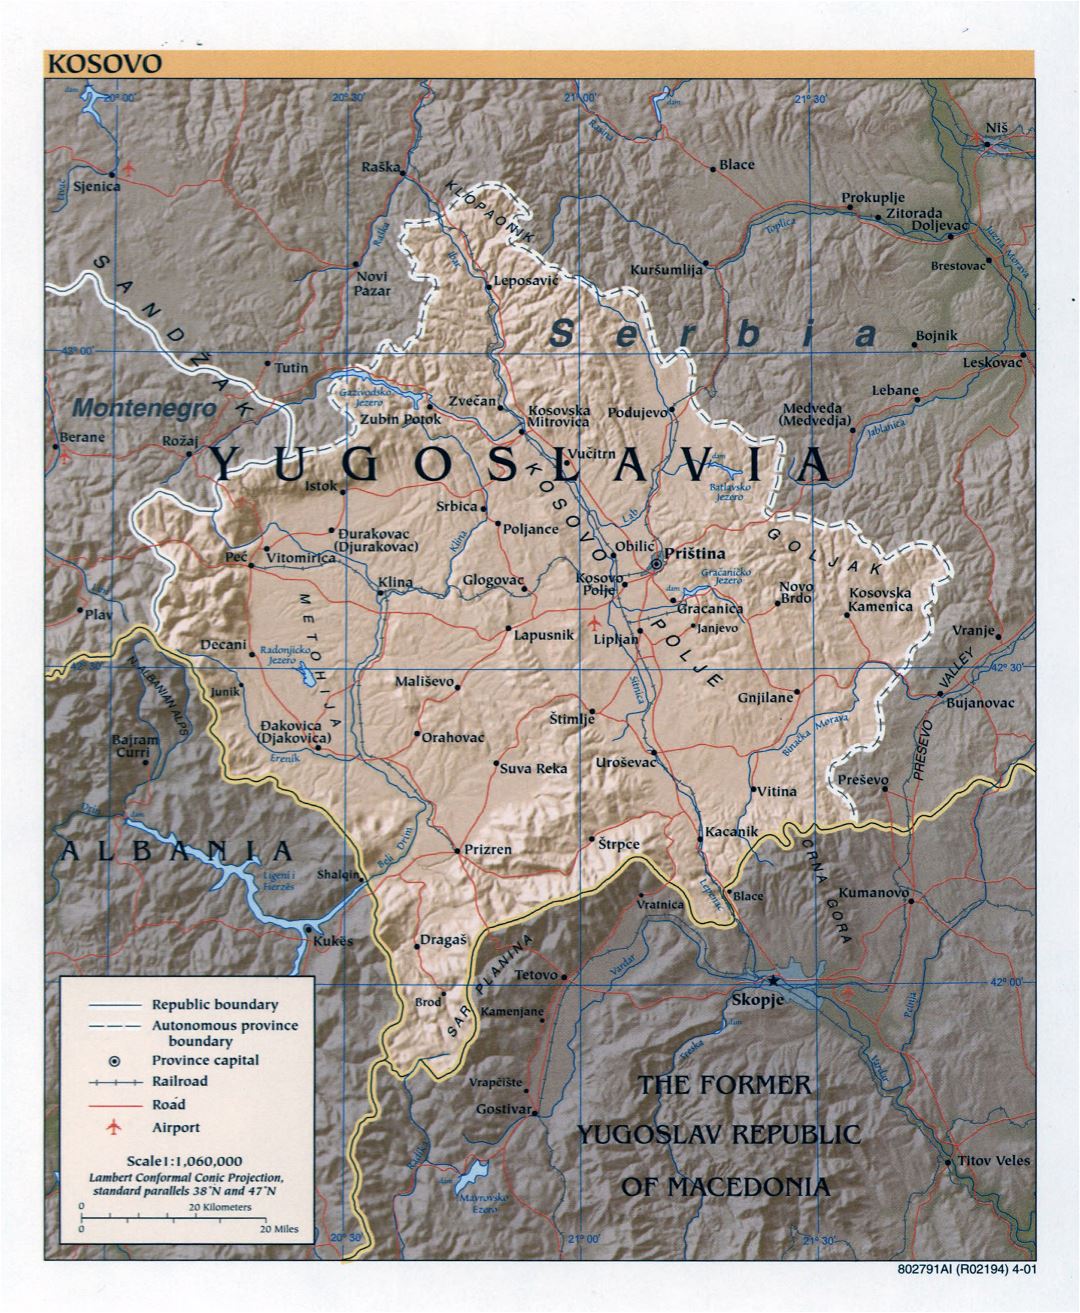 Большая детальная политическая карта Косово с рельефом, дорогами, железными дорогами, крупными городами и аэропортами - 2001